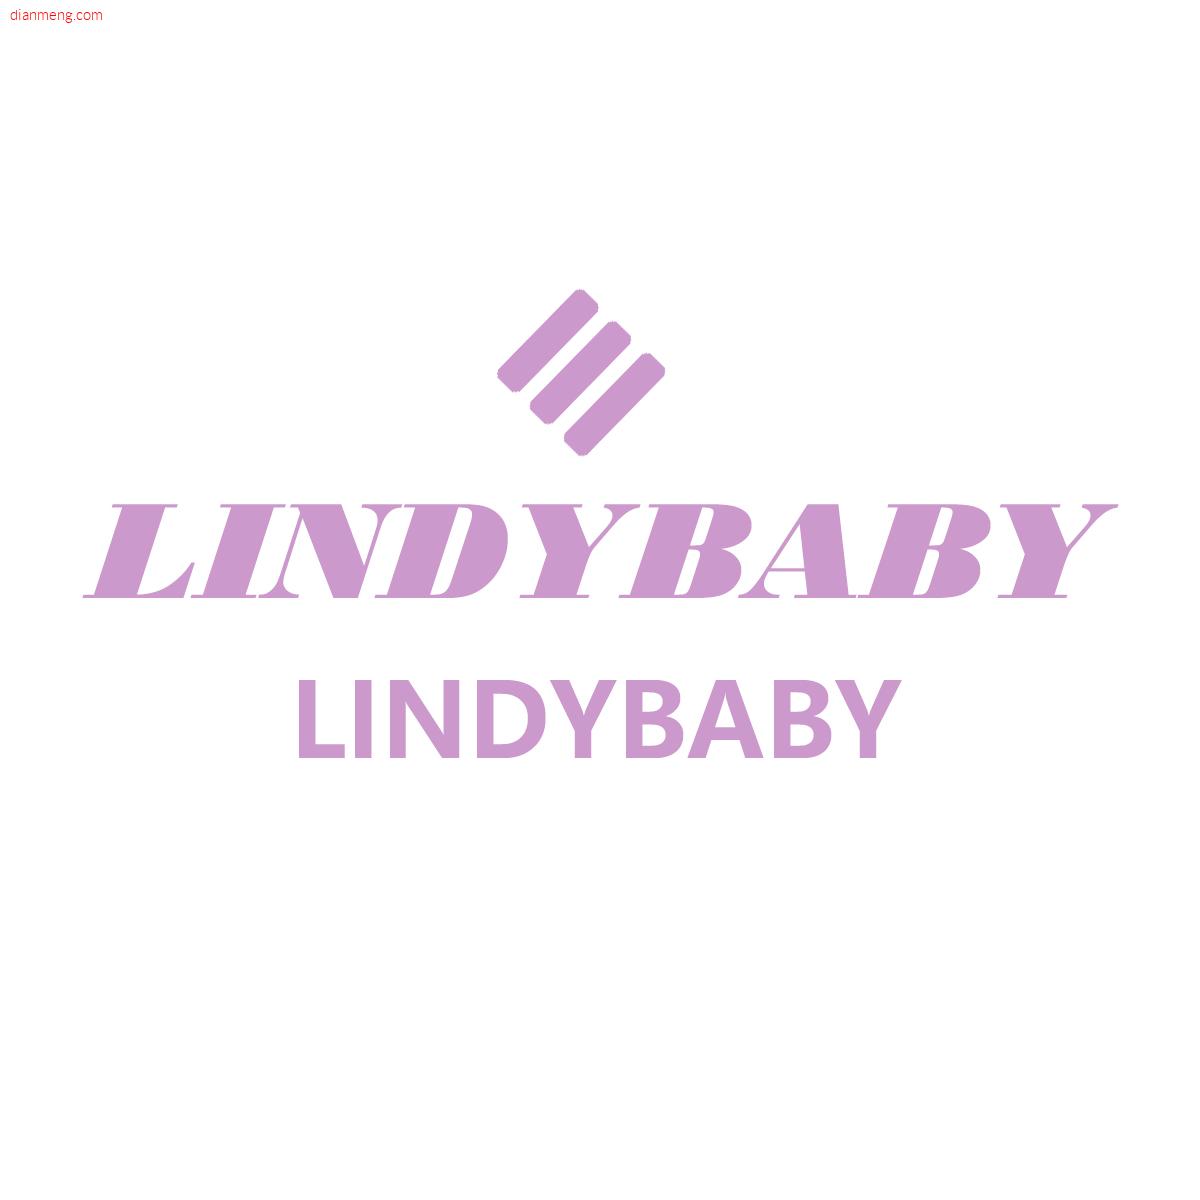 LINDY BABYLOGO